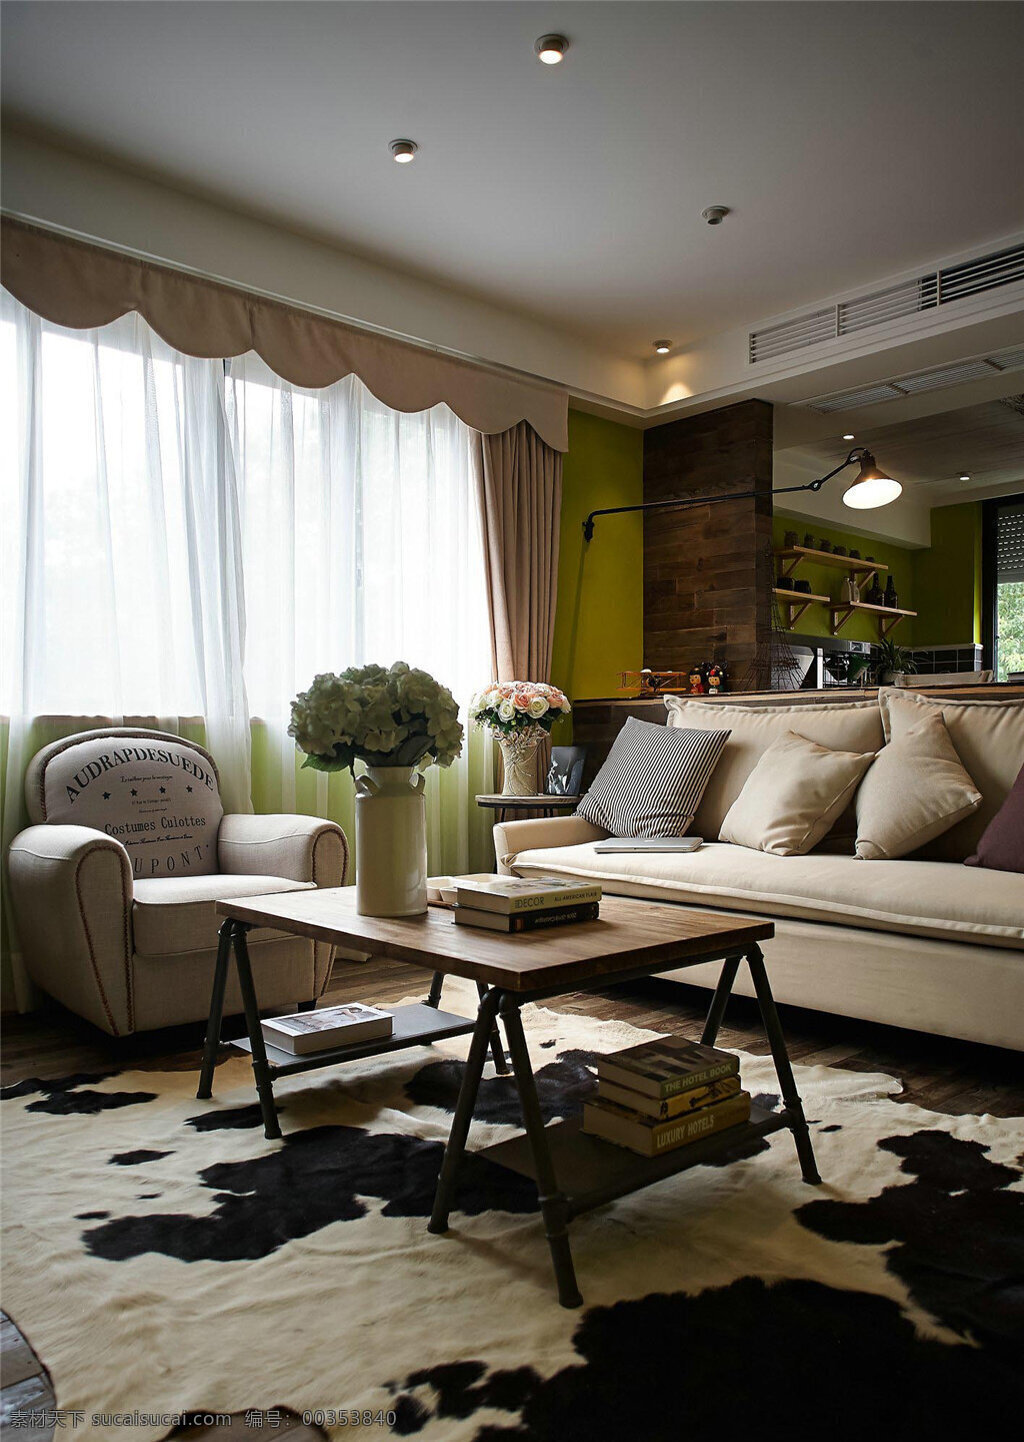 现代 时尚 客厅 黑色 斑点 地毯 室内装修 效果图 素色沙发 客厅装修 白色窗帘 方形茶几